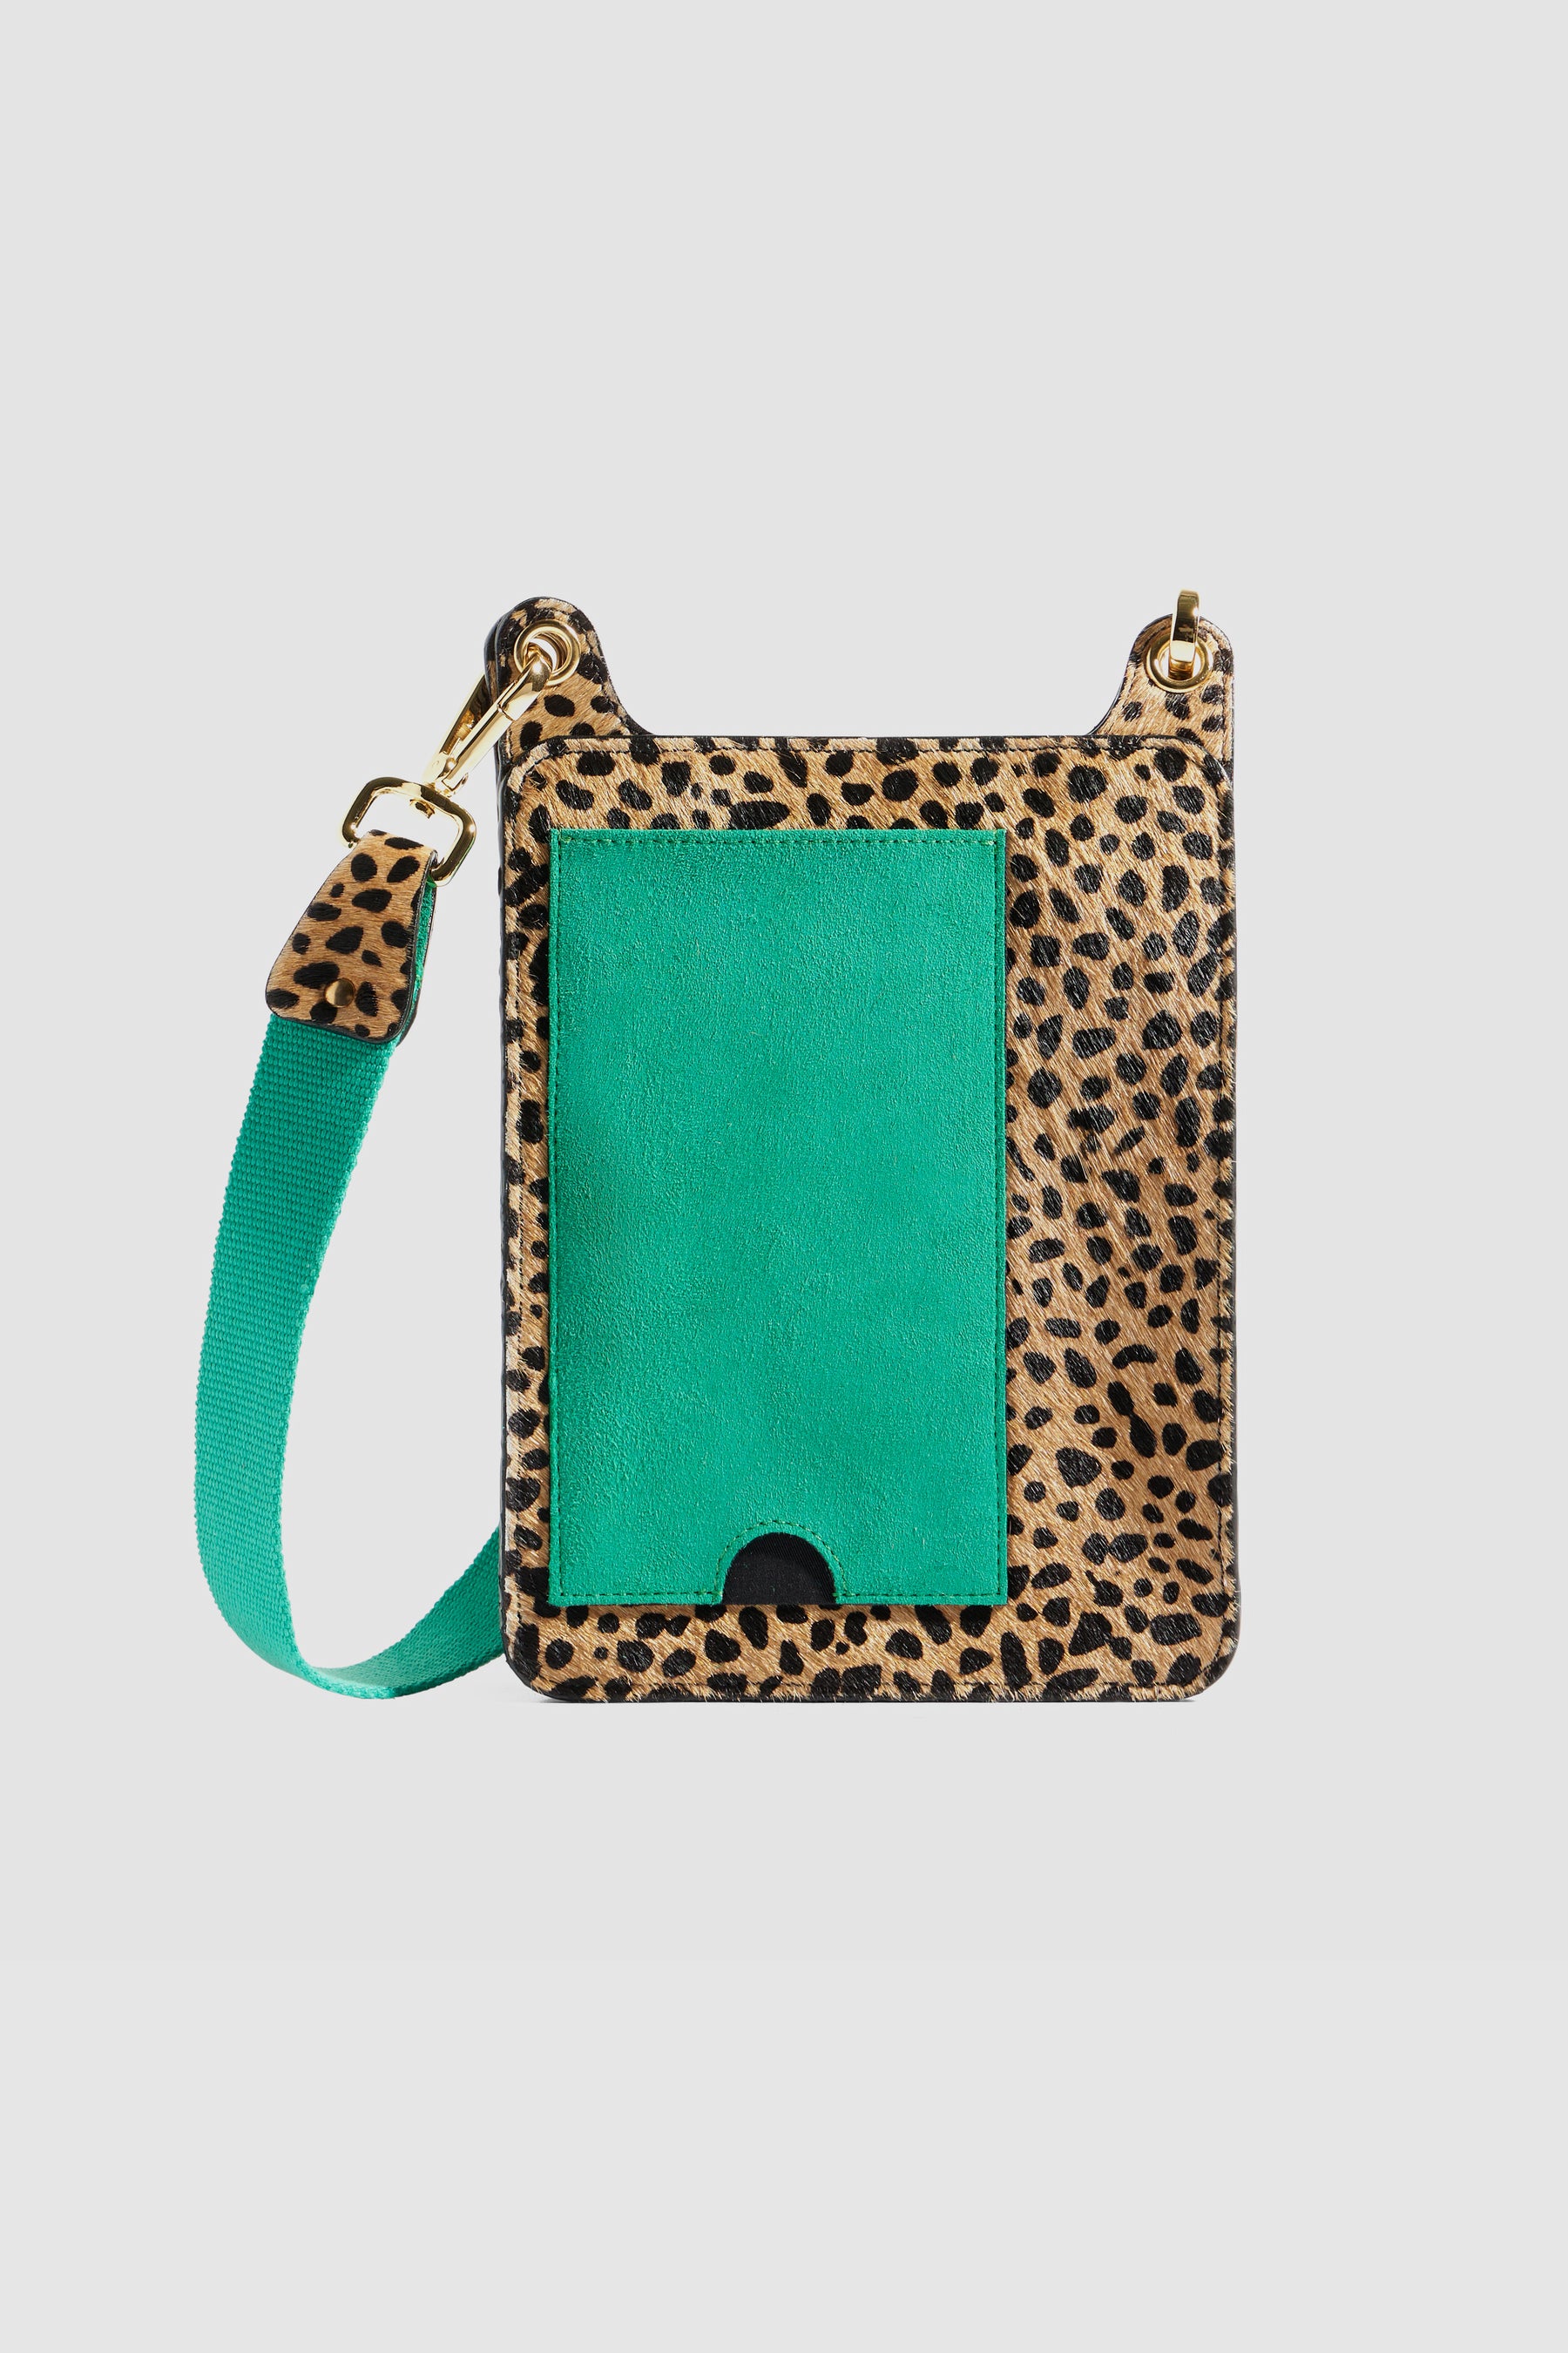 Stanley satchel in Cheetah printed leather